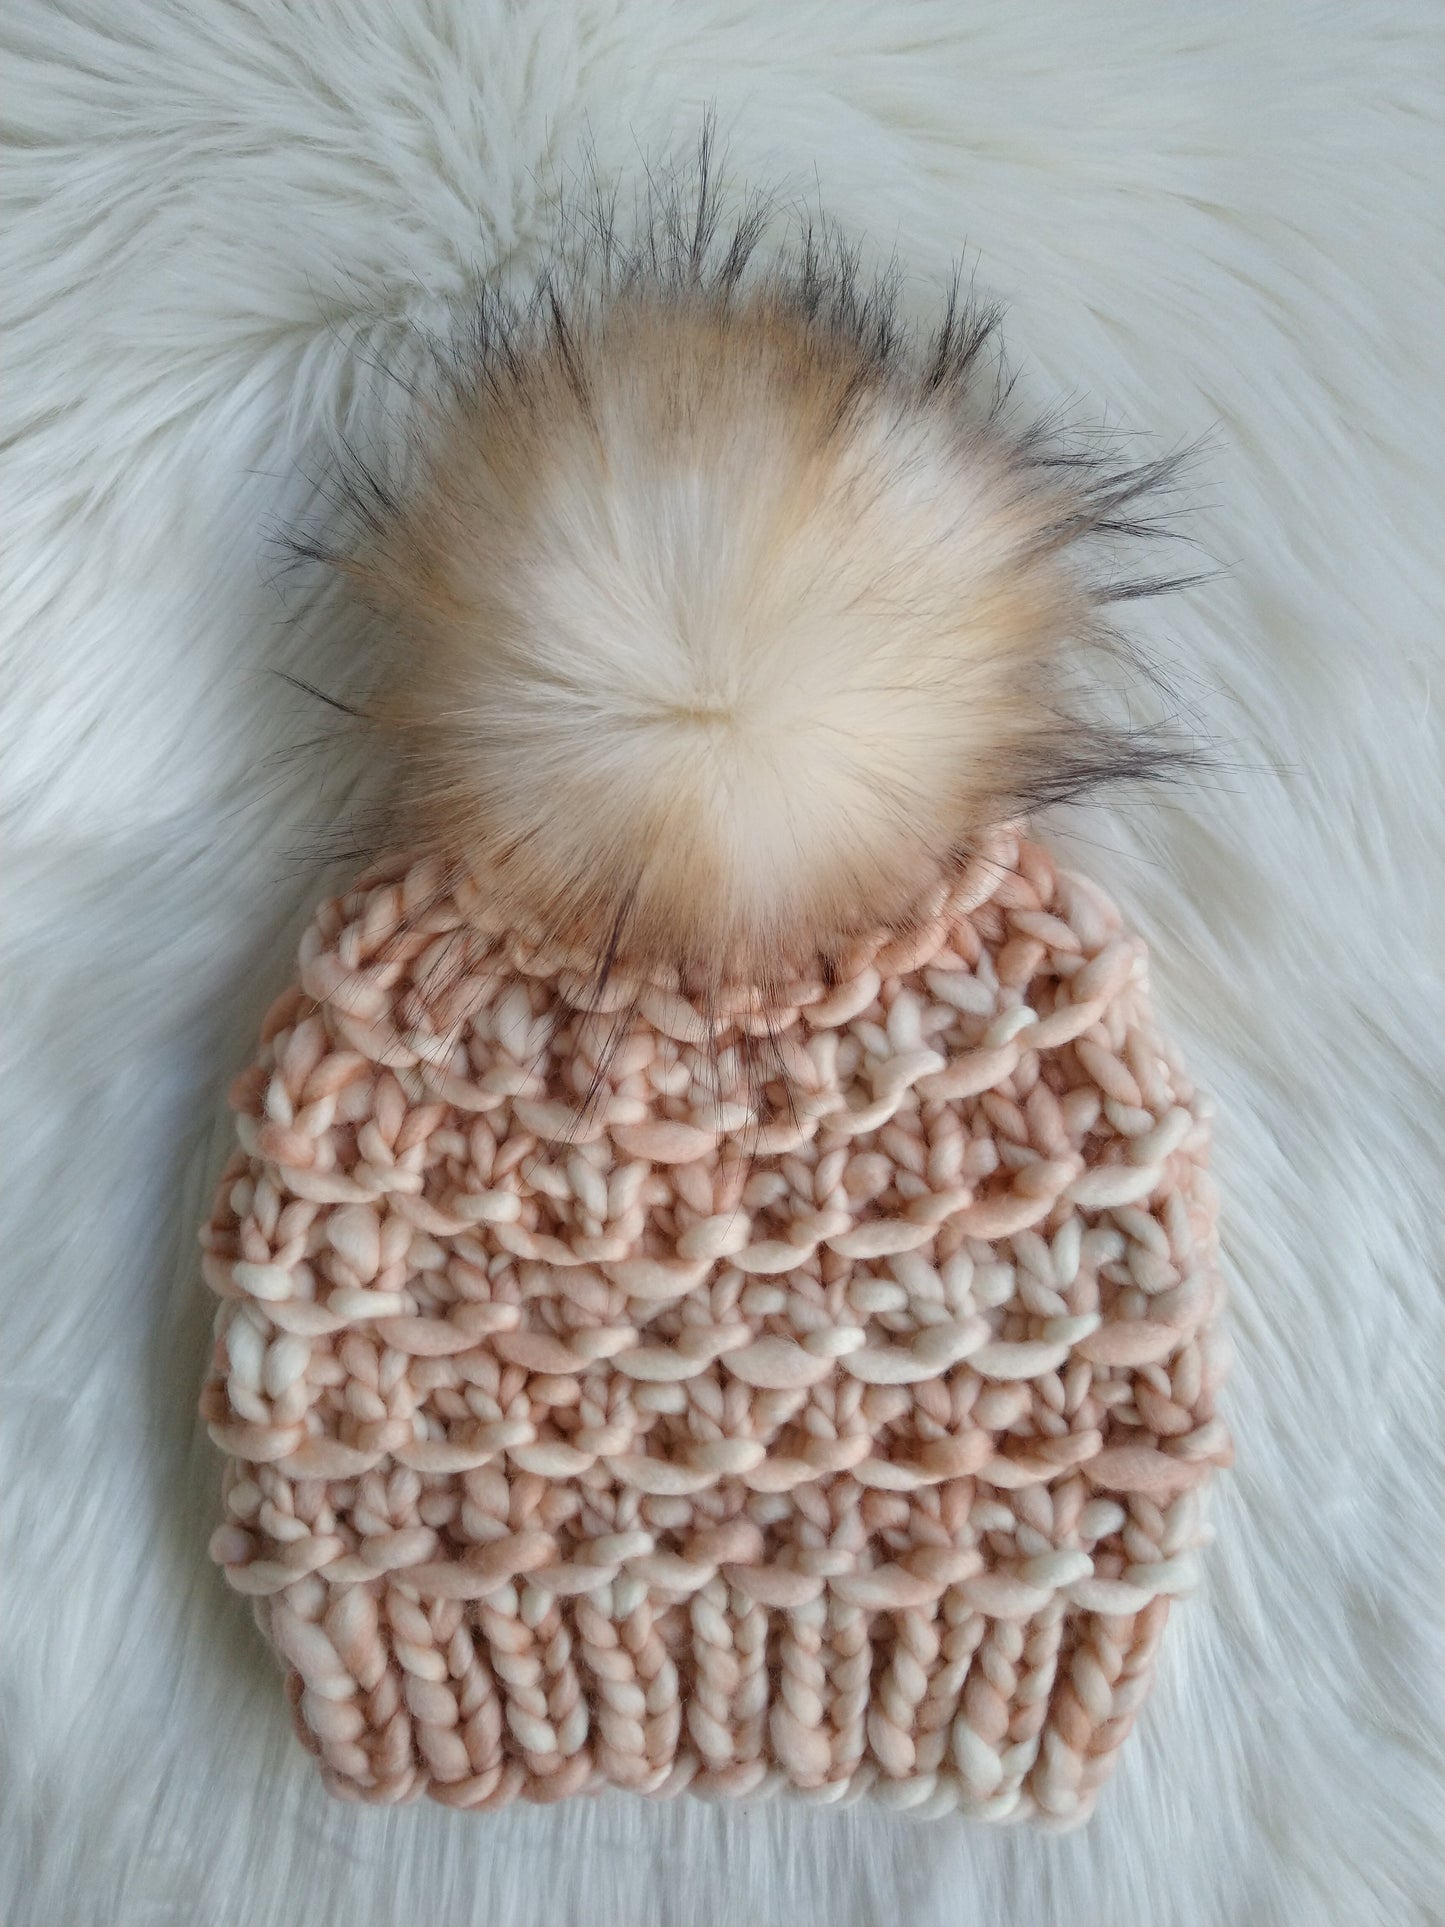 Kappa Hat and Cowl Knitting Pattern